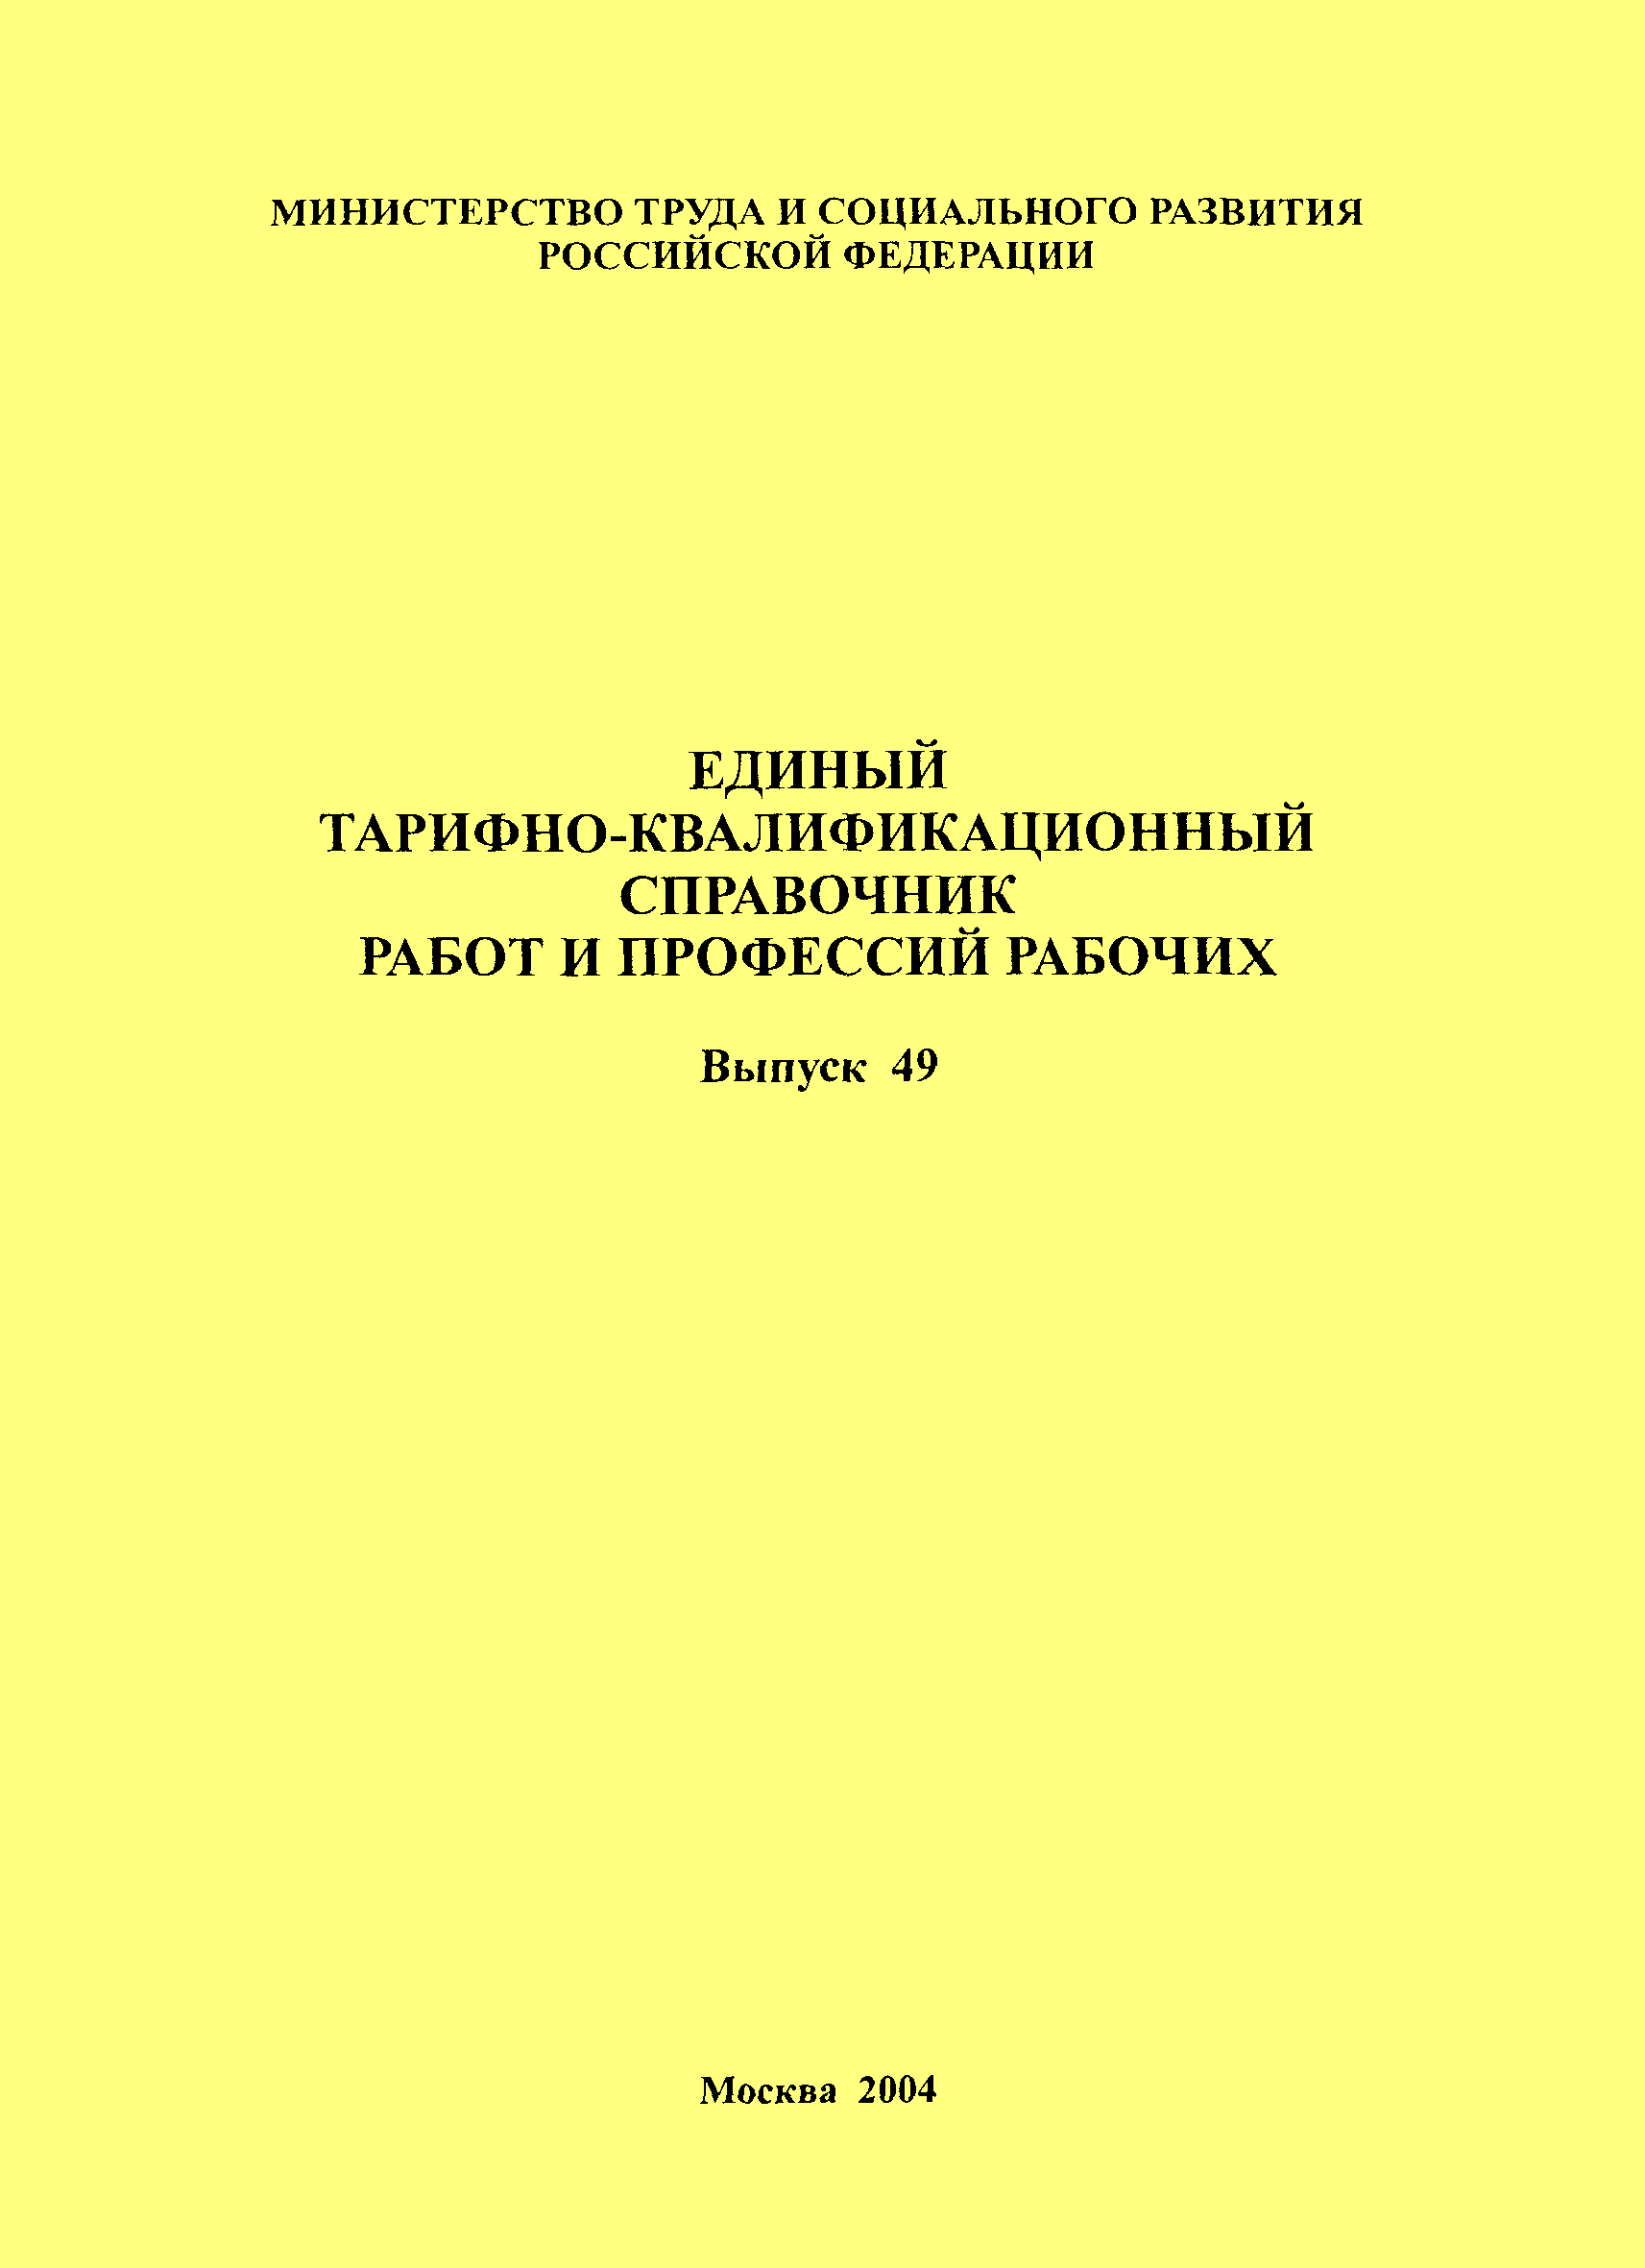 ЕТКС Выпуск 49